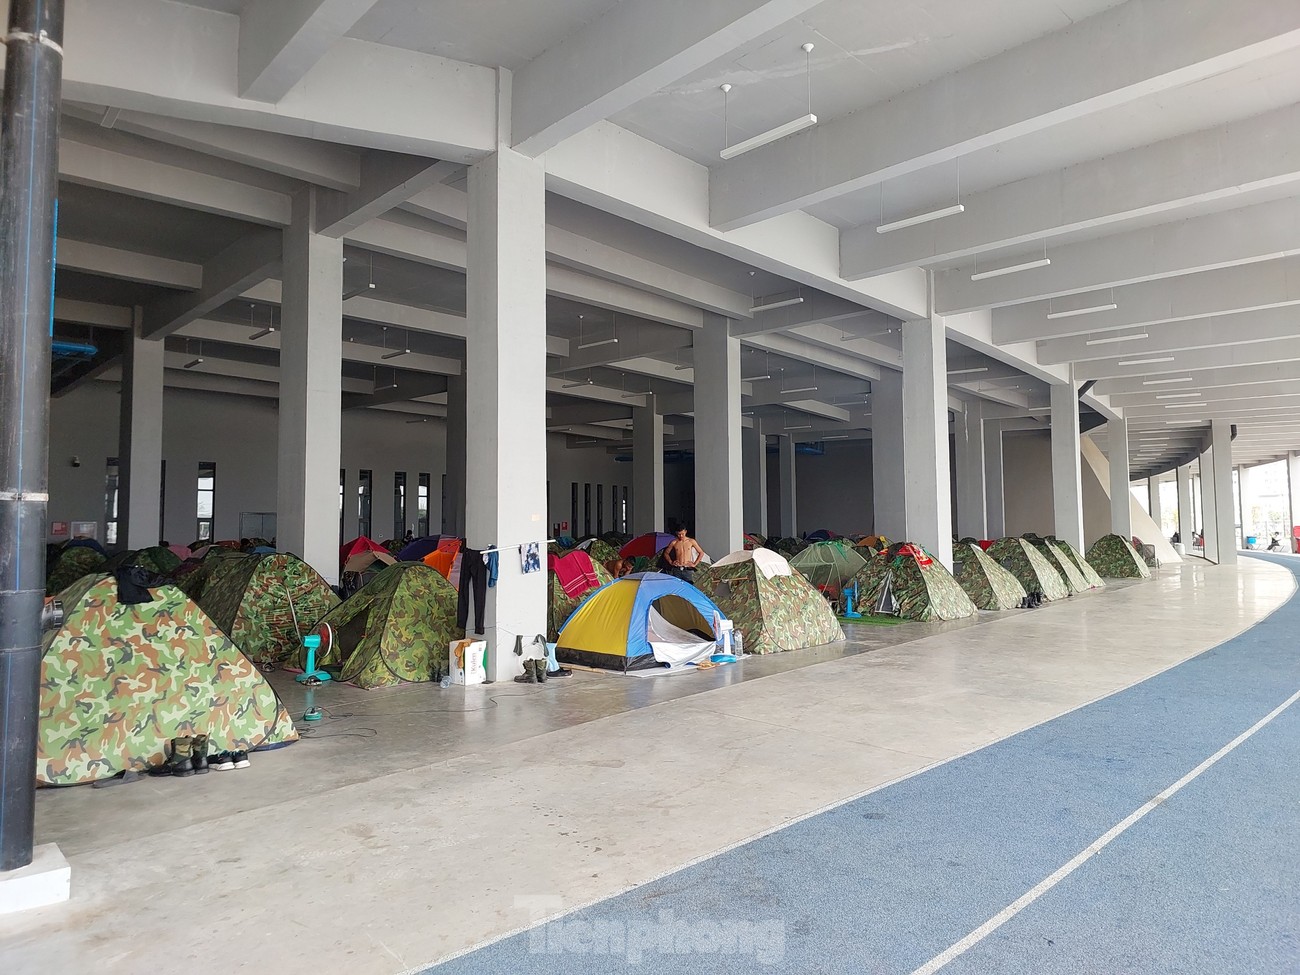 Bí mật những căn lều tạm đang nỗ lực tạo ra Lễ khai mạc SEA Games tầm cỡ Olympic của Campuchia ảnh 2